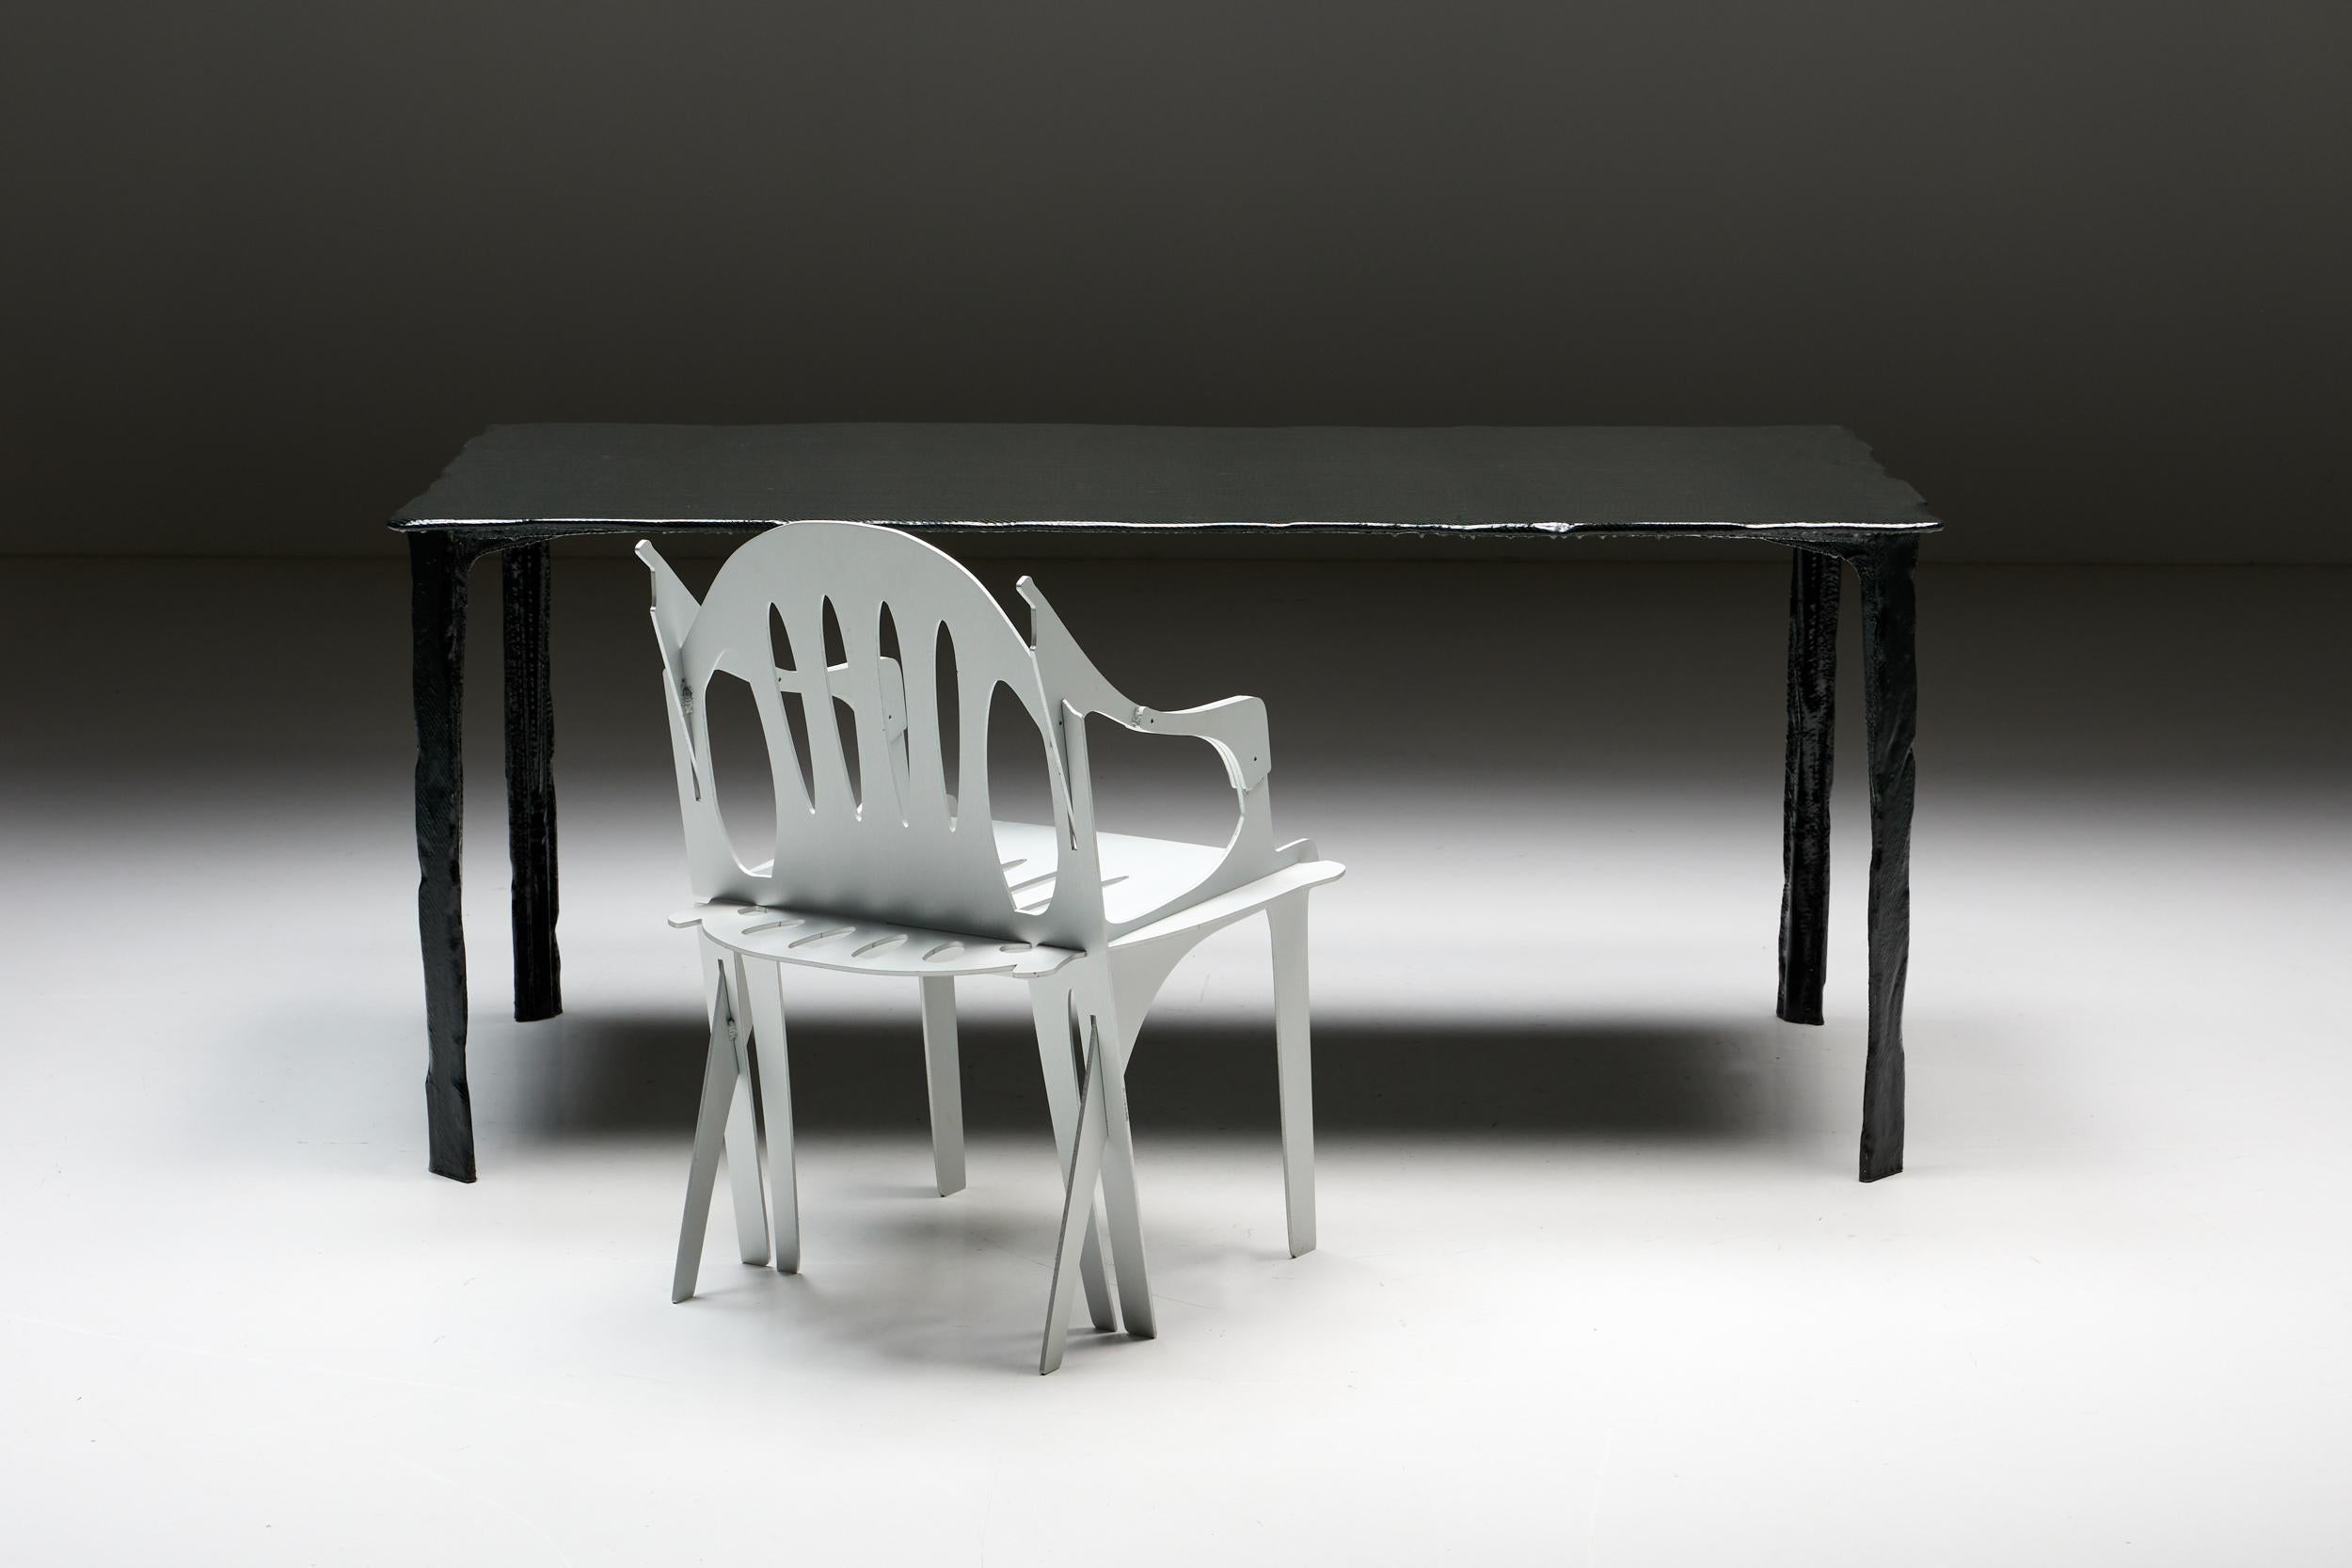 Carbon Table; Schimmel & Schweikle; Aluminium; Kohlefaser; Epoxy; Modernes Design; Technologie; Kunst; Kultur; 

Der Tisch wurde von Schimmel & Schweikle entworfen und aus einer Kombination von leichtem und widerstandsfähigem Aluminium, Kohlefaser